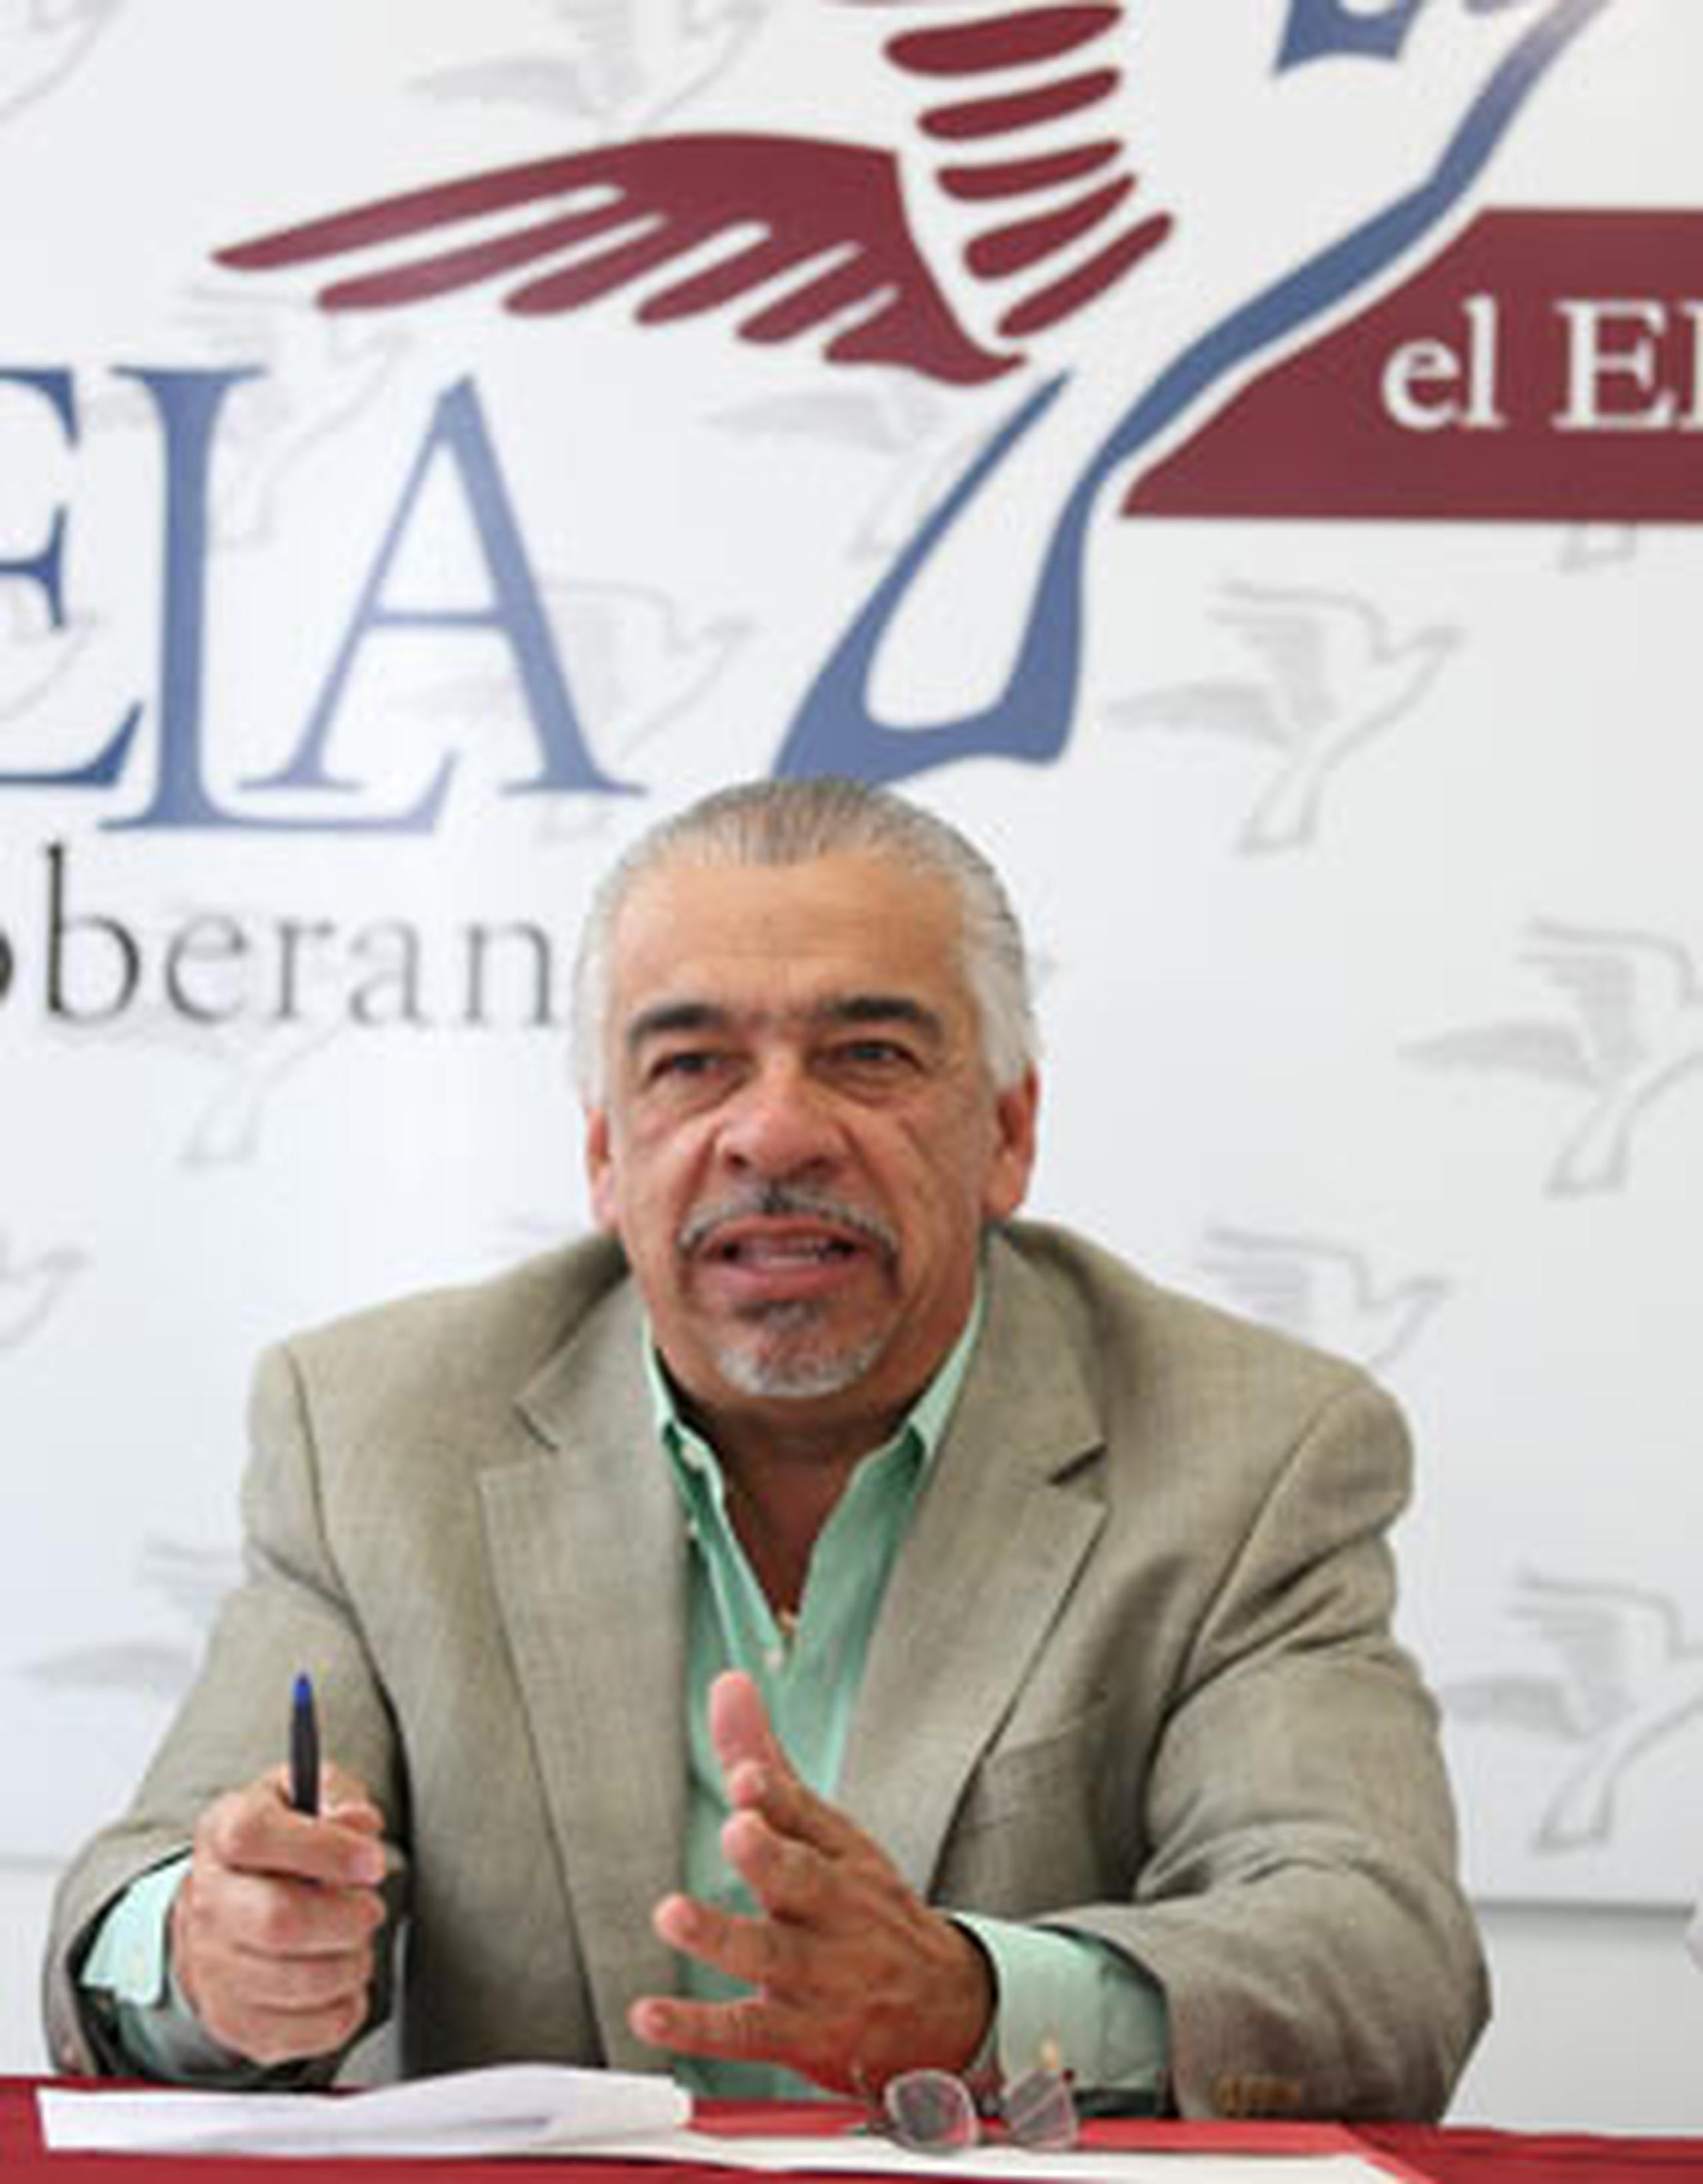 A un mes de la consulta, el presidente de ALAS, Luis A. Delgado Rodríguez, se expresó confiado en que el Estado Libre Asociado (ELA) Soberano prevalezca. (jose.candelaria@gfrmedia.com)